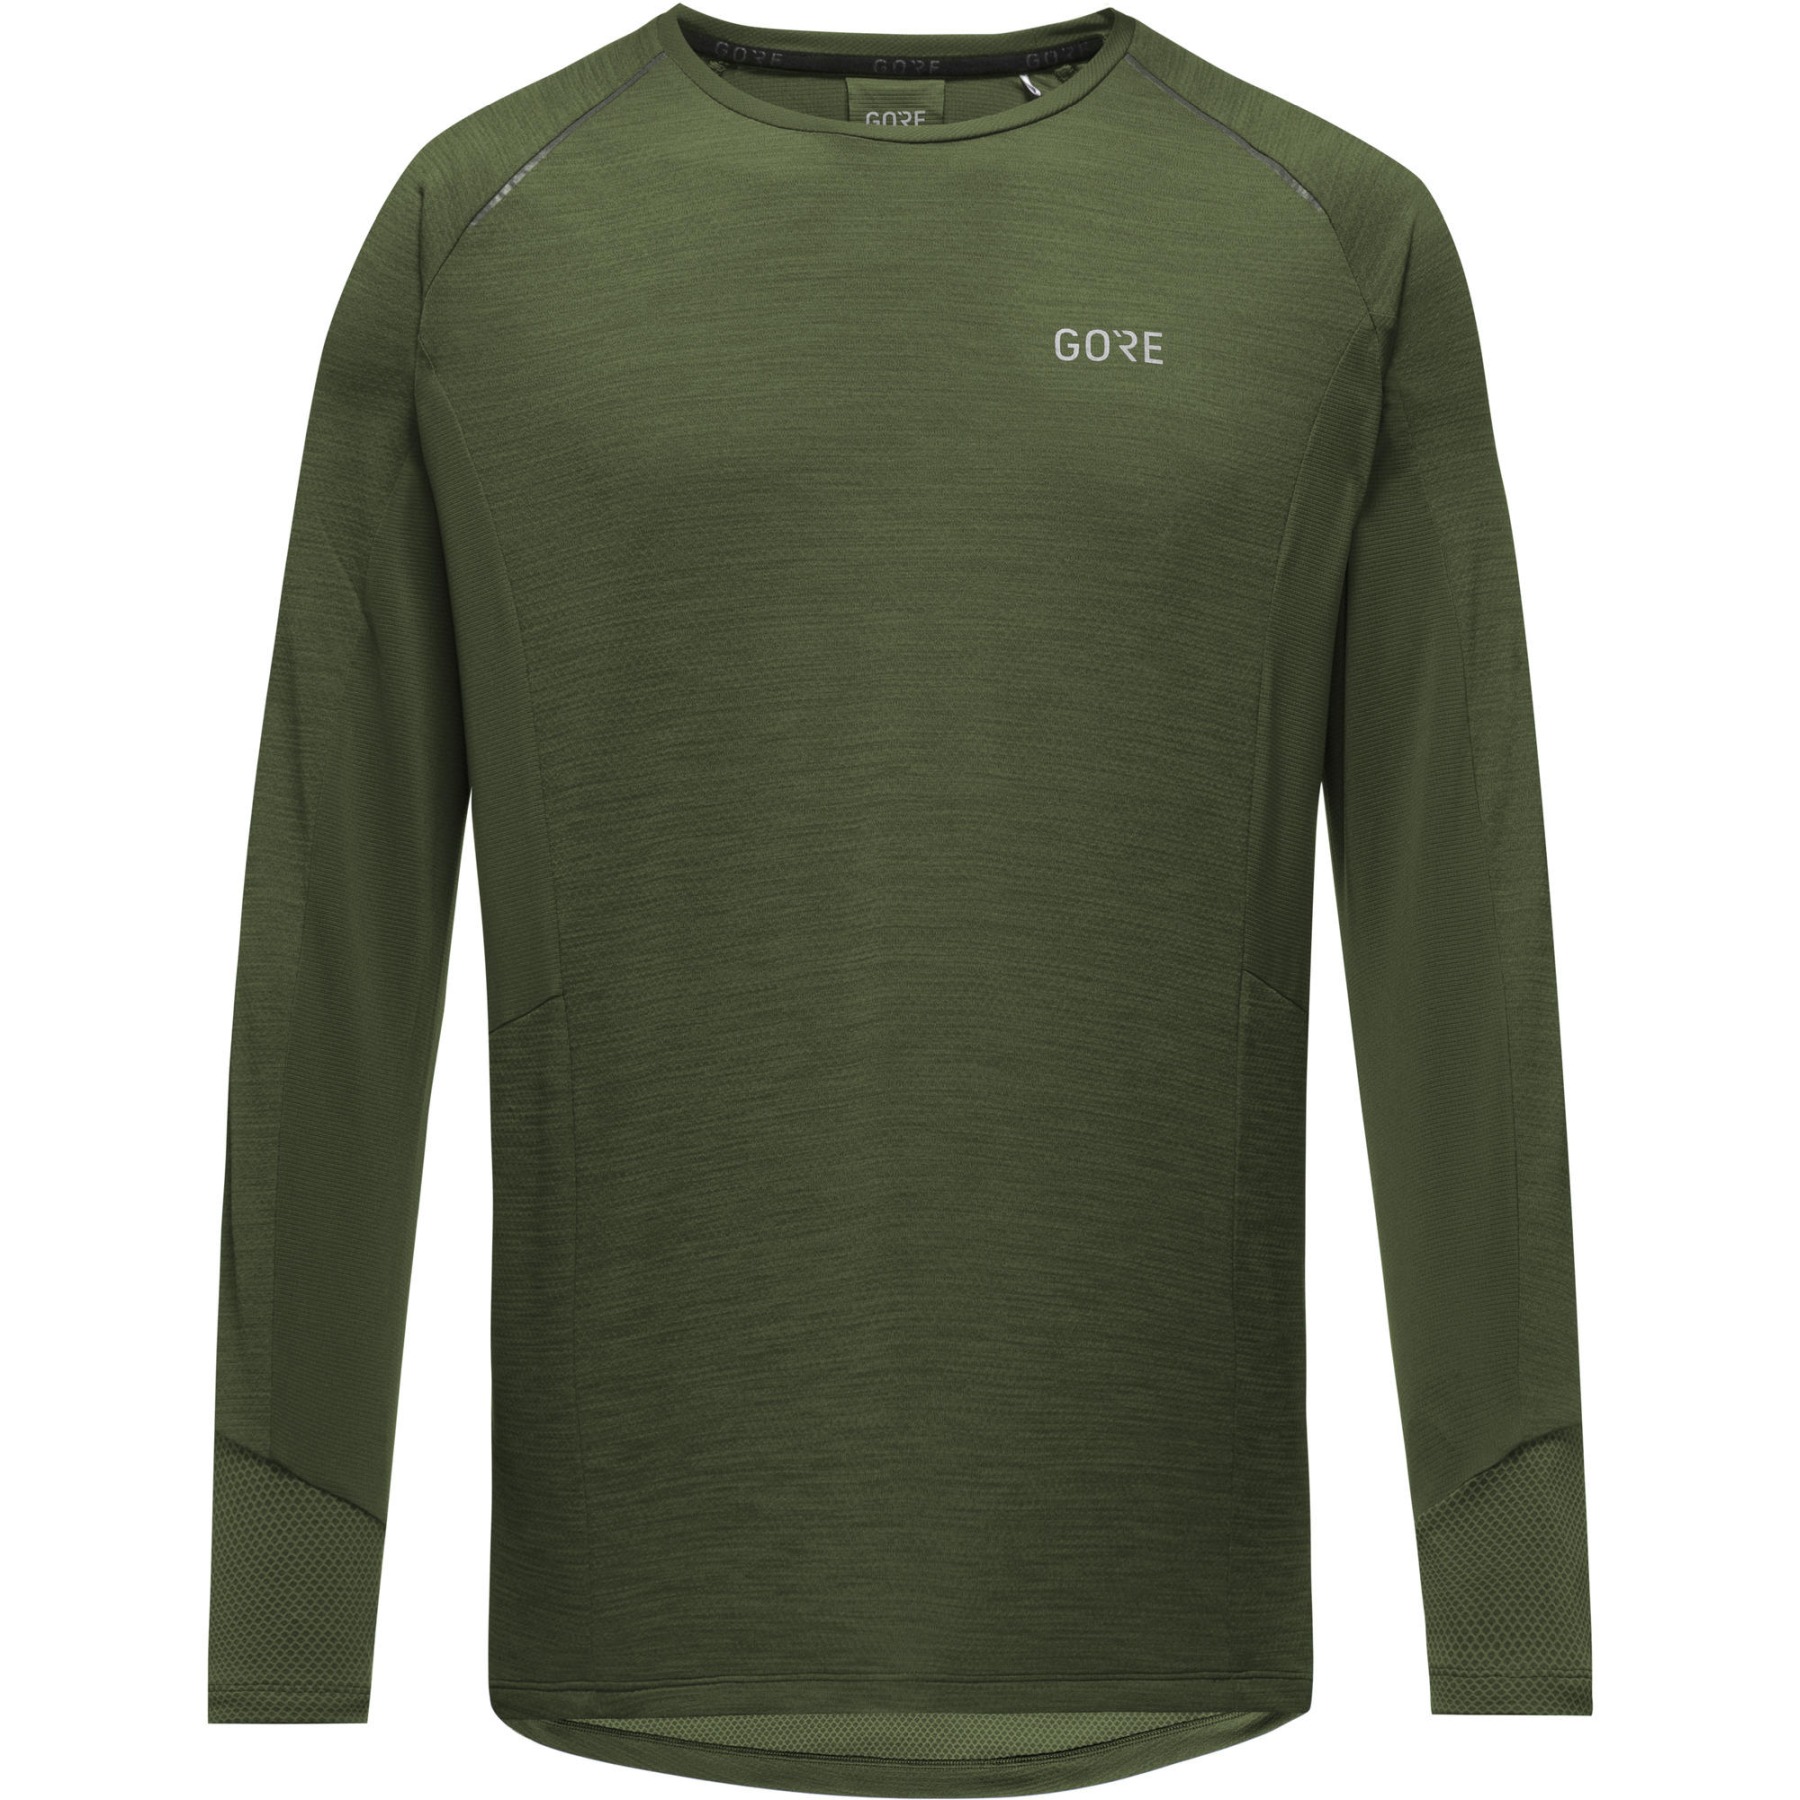 Productfoto van GOREWEAR Energetic Shirt met langen mouwen Heren - utility green BH00